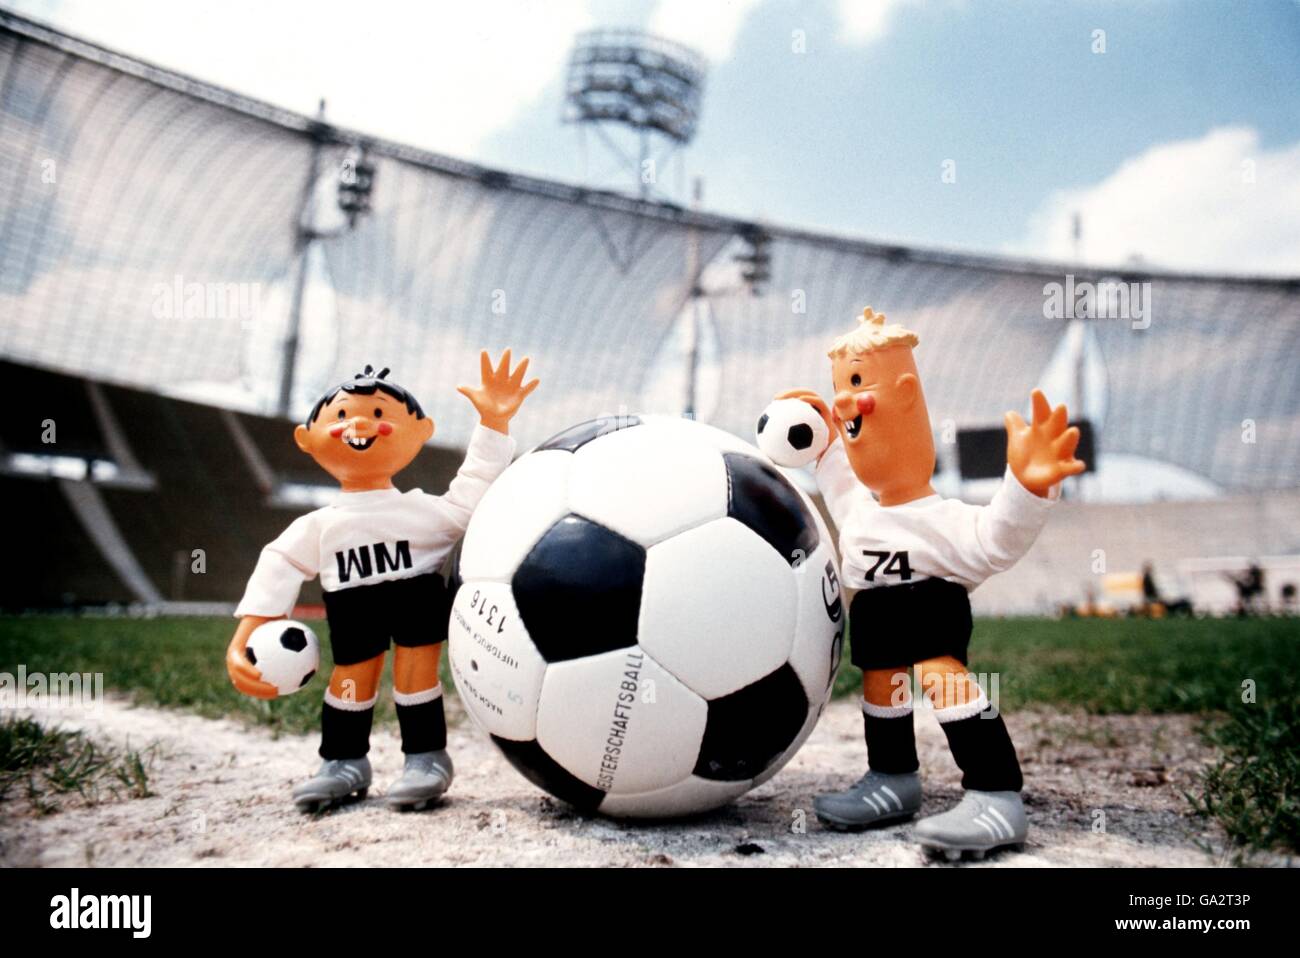 Le mascotte ufficiali per la Coppa del mondo 1974, Tip and Tap, si preparano a dare il via al centro dell'Olympiastadion di Monaco, sede della finale della Coppa del mondo 1974 Foto Stock